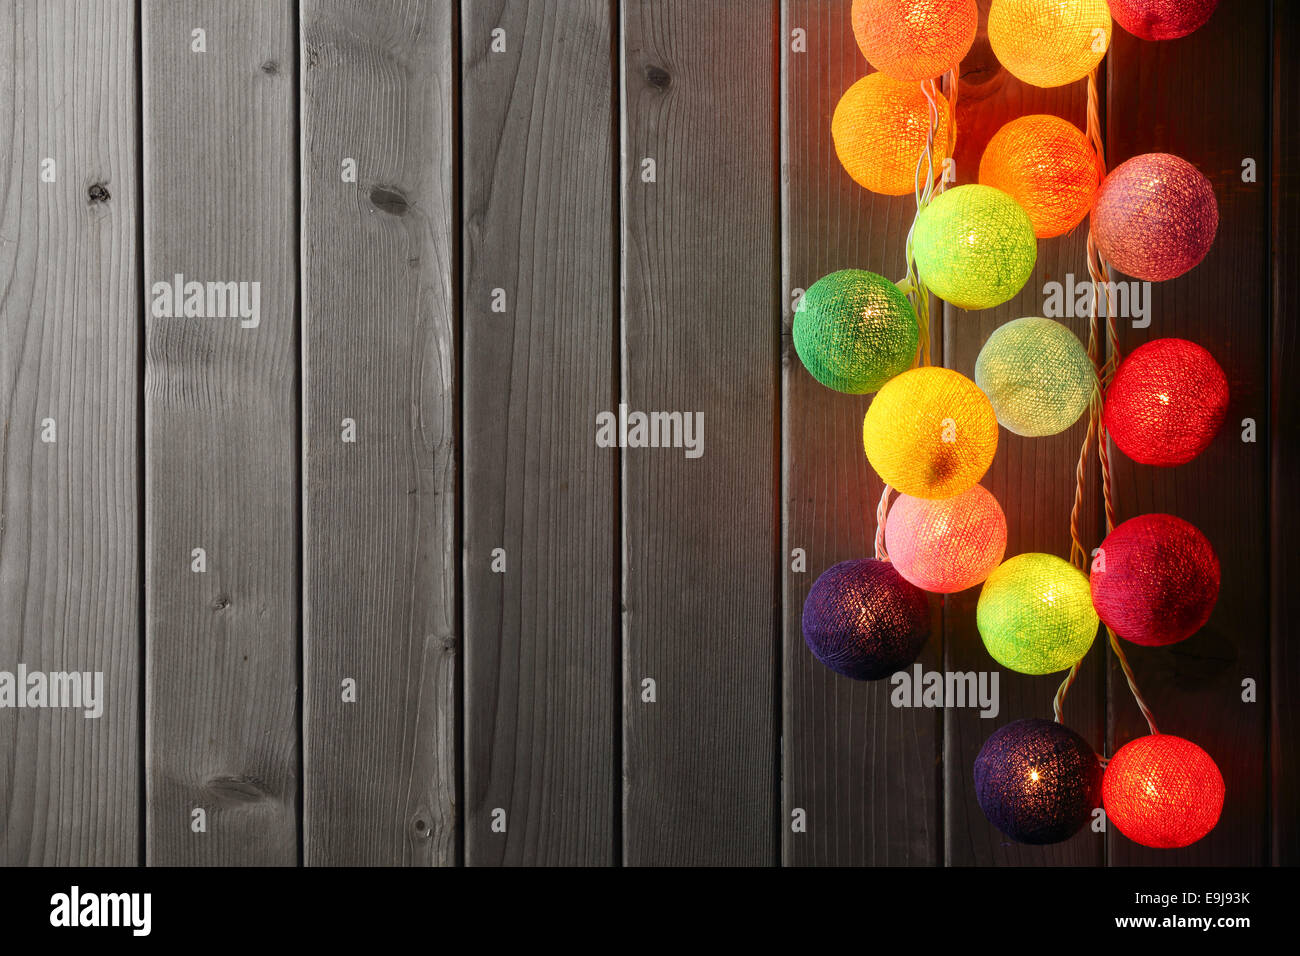 Christmas ball lights over wood plank. Stock Photo